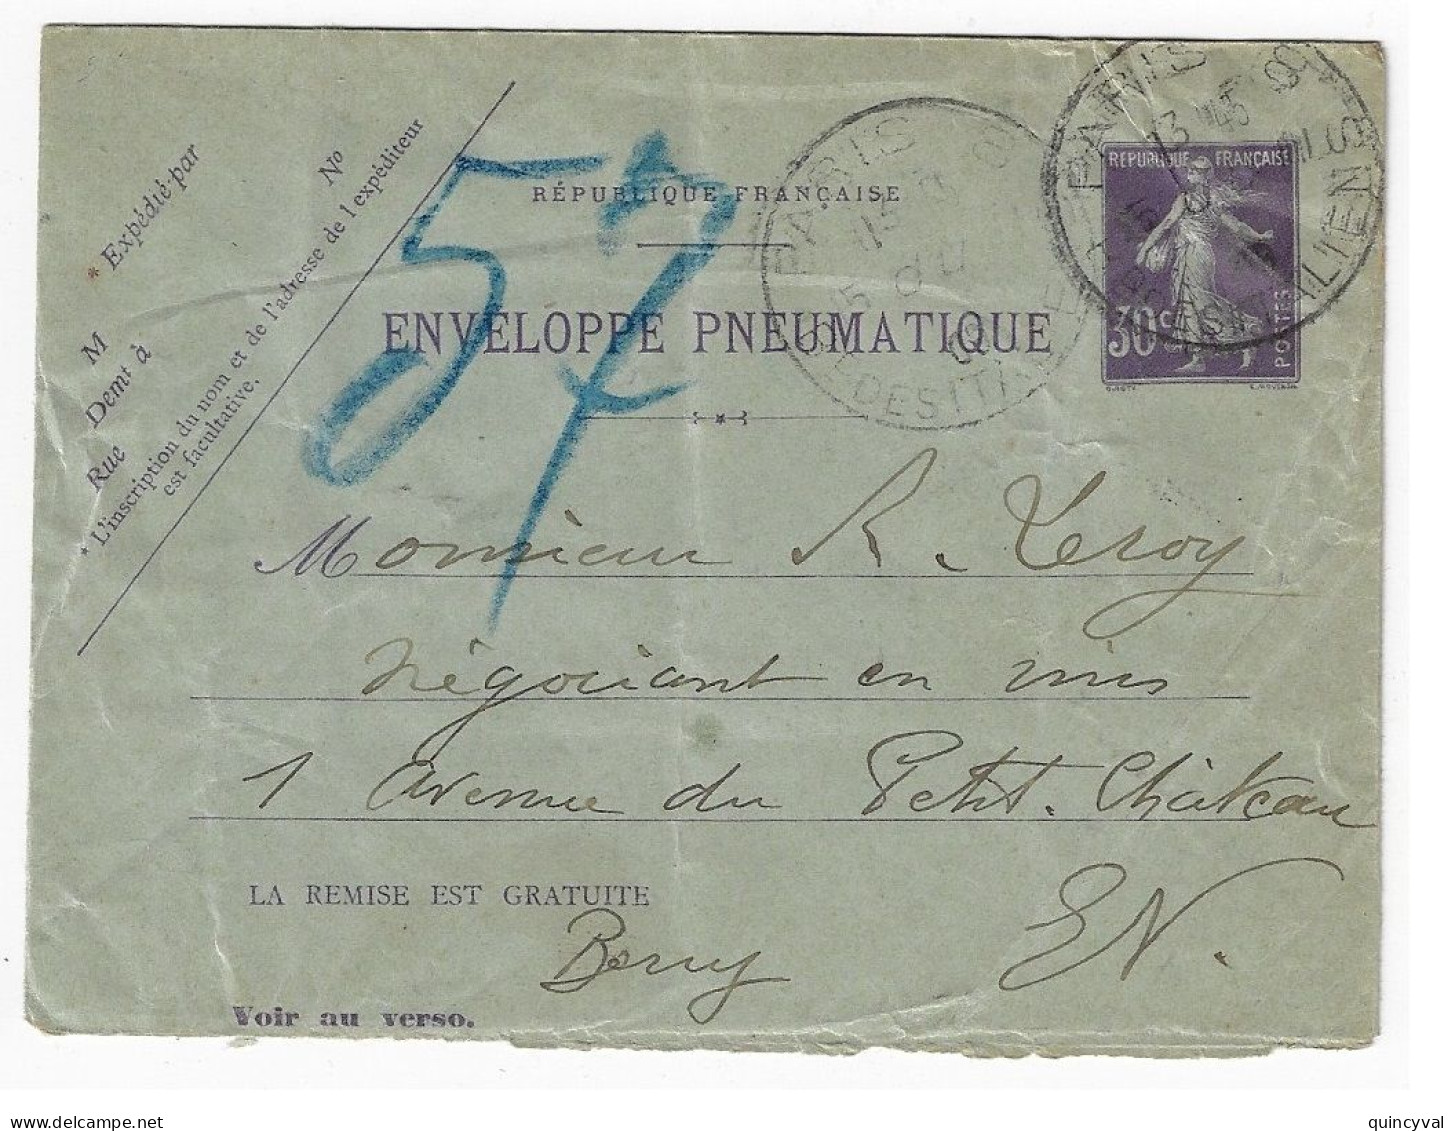 PARIS 8 Italiens Pneumatique Enveloppe Entier 30c Semeuse Violet Yv EPP2 Storch K2 Verso 16 Lignes 20 Villes Ob 11 1909 - Pneumatiques